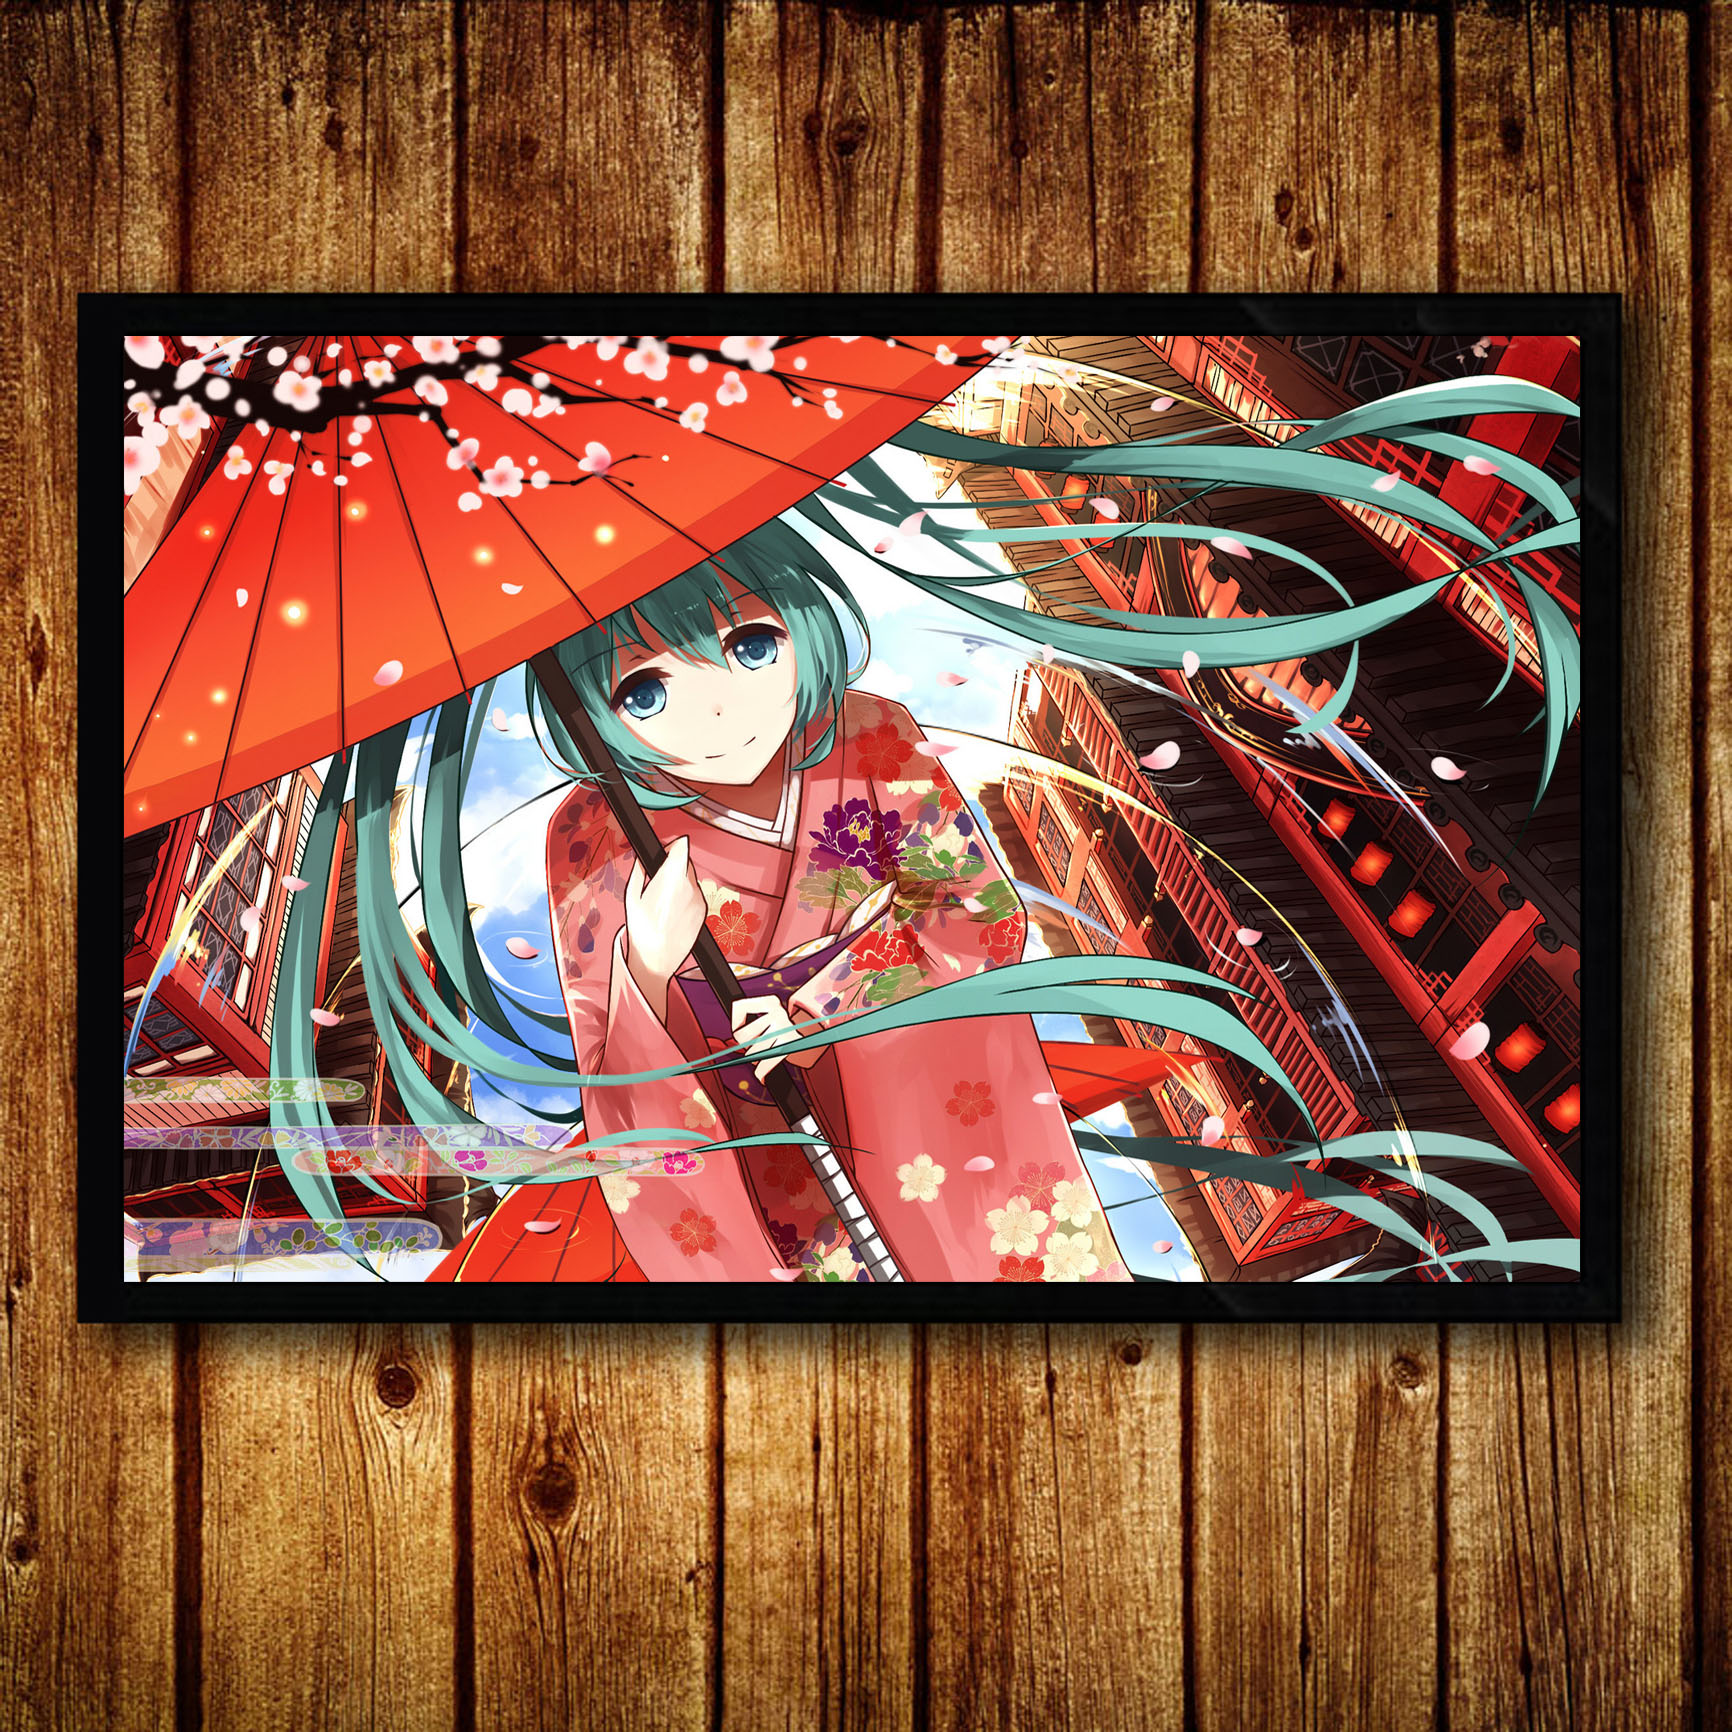 日本卡通动漫美女日式风格装饰画海报榻榻米主题餐厅卧室壁挂墙画